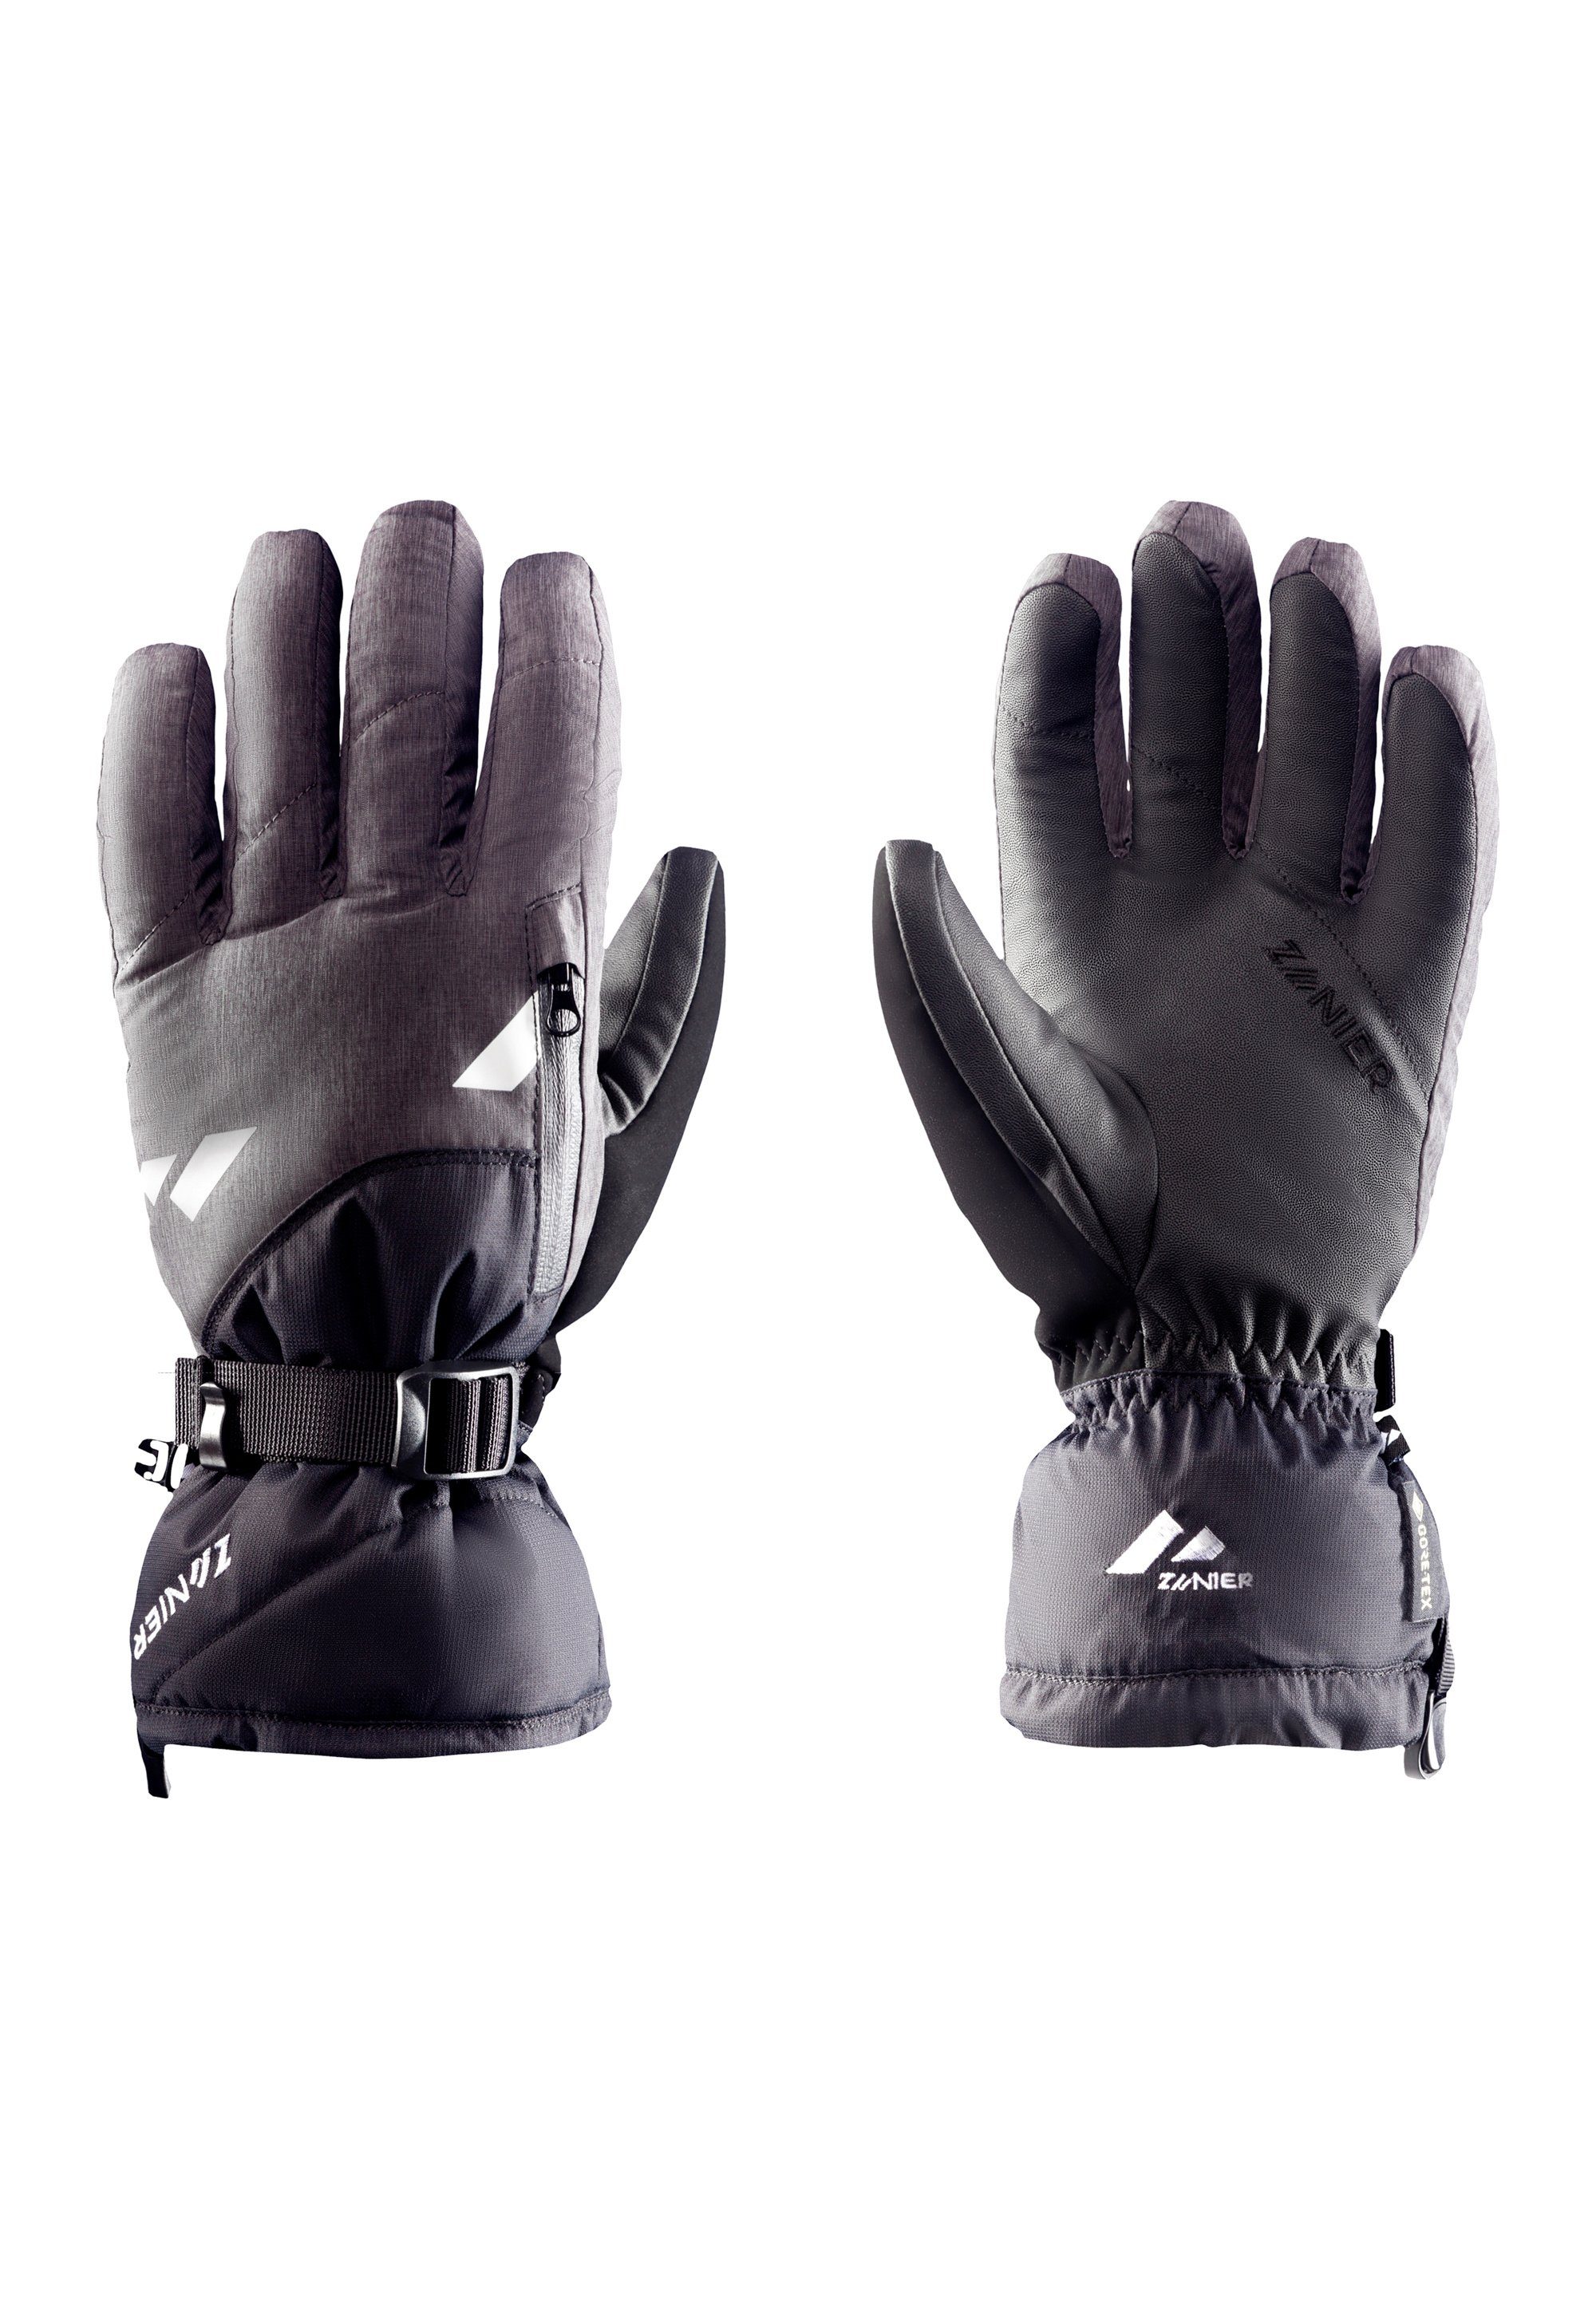 Zanier Multisporthandschuhe RIDE.GTX We focus gloves on Schwarz-Anthrazit